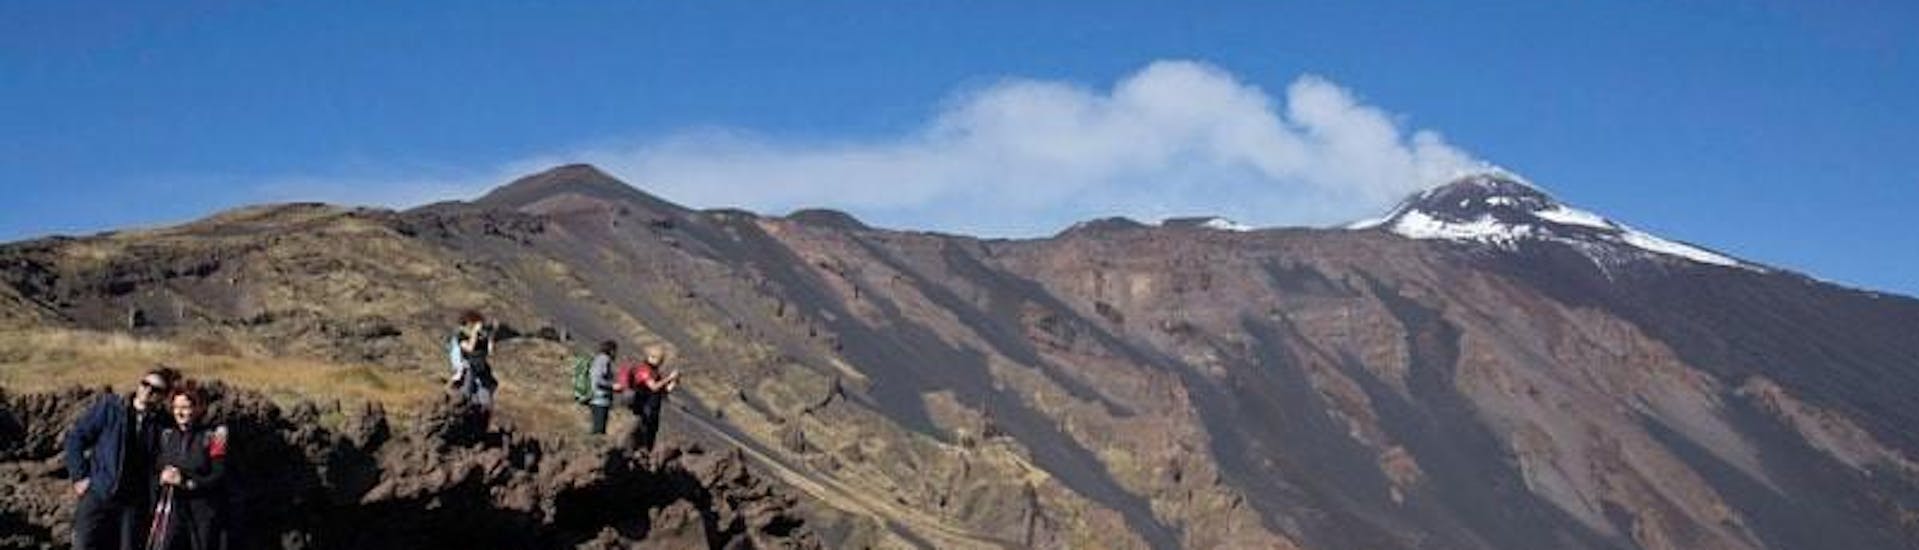 Vía Ferrata avanzado - Etna.